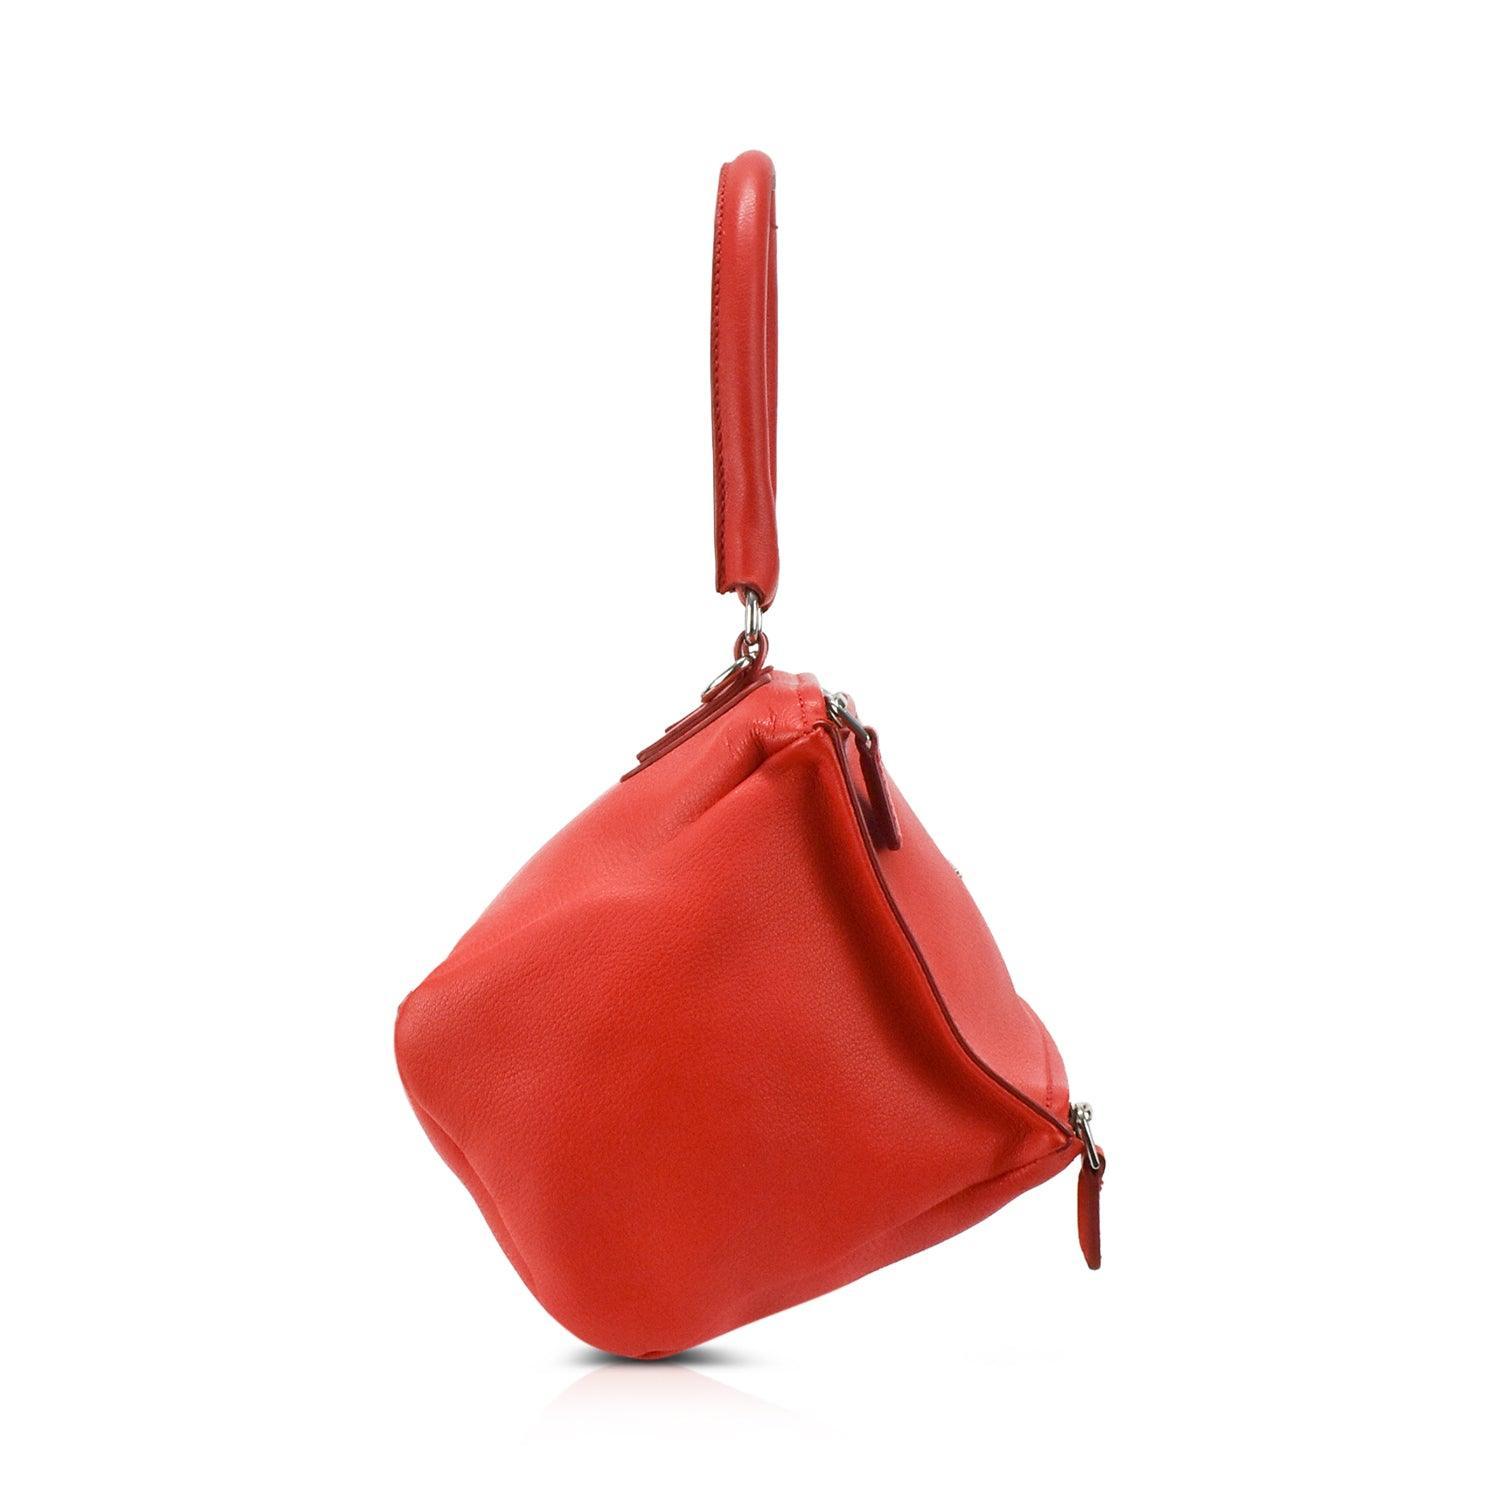 Givenchy Handbag Unboxing | Luxury Handbag - YouTube